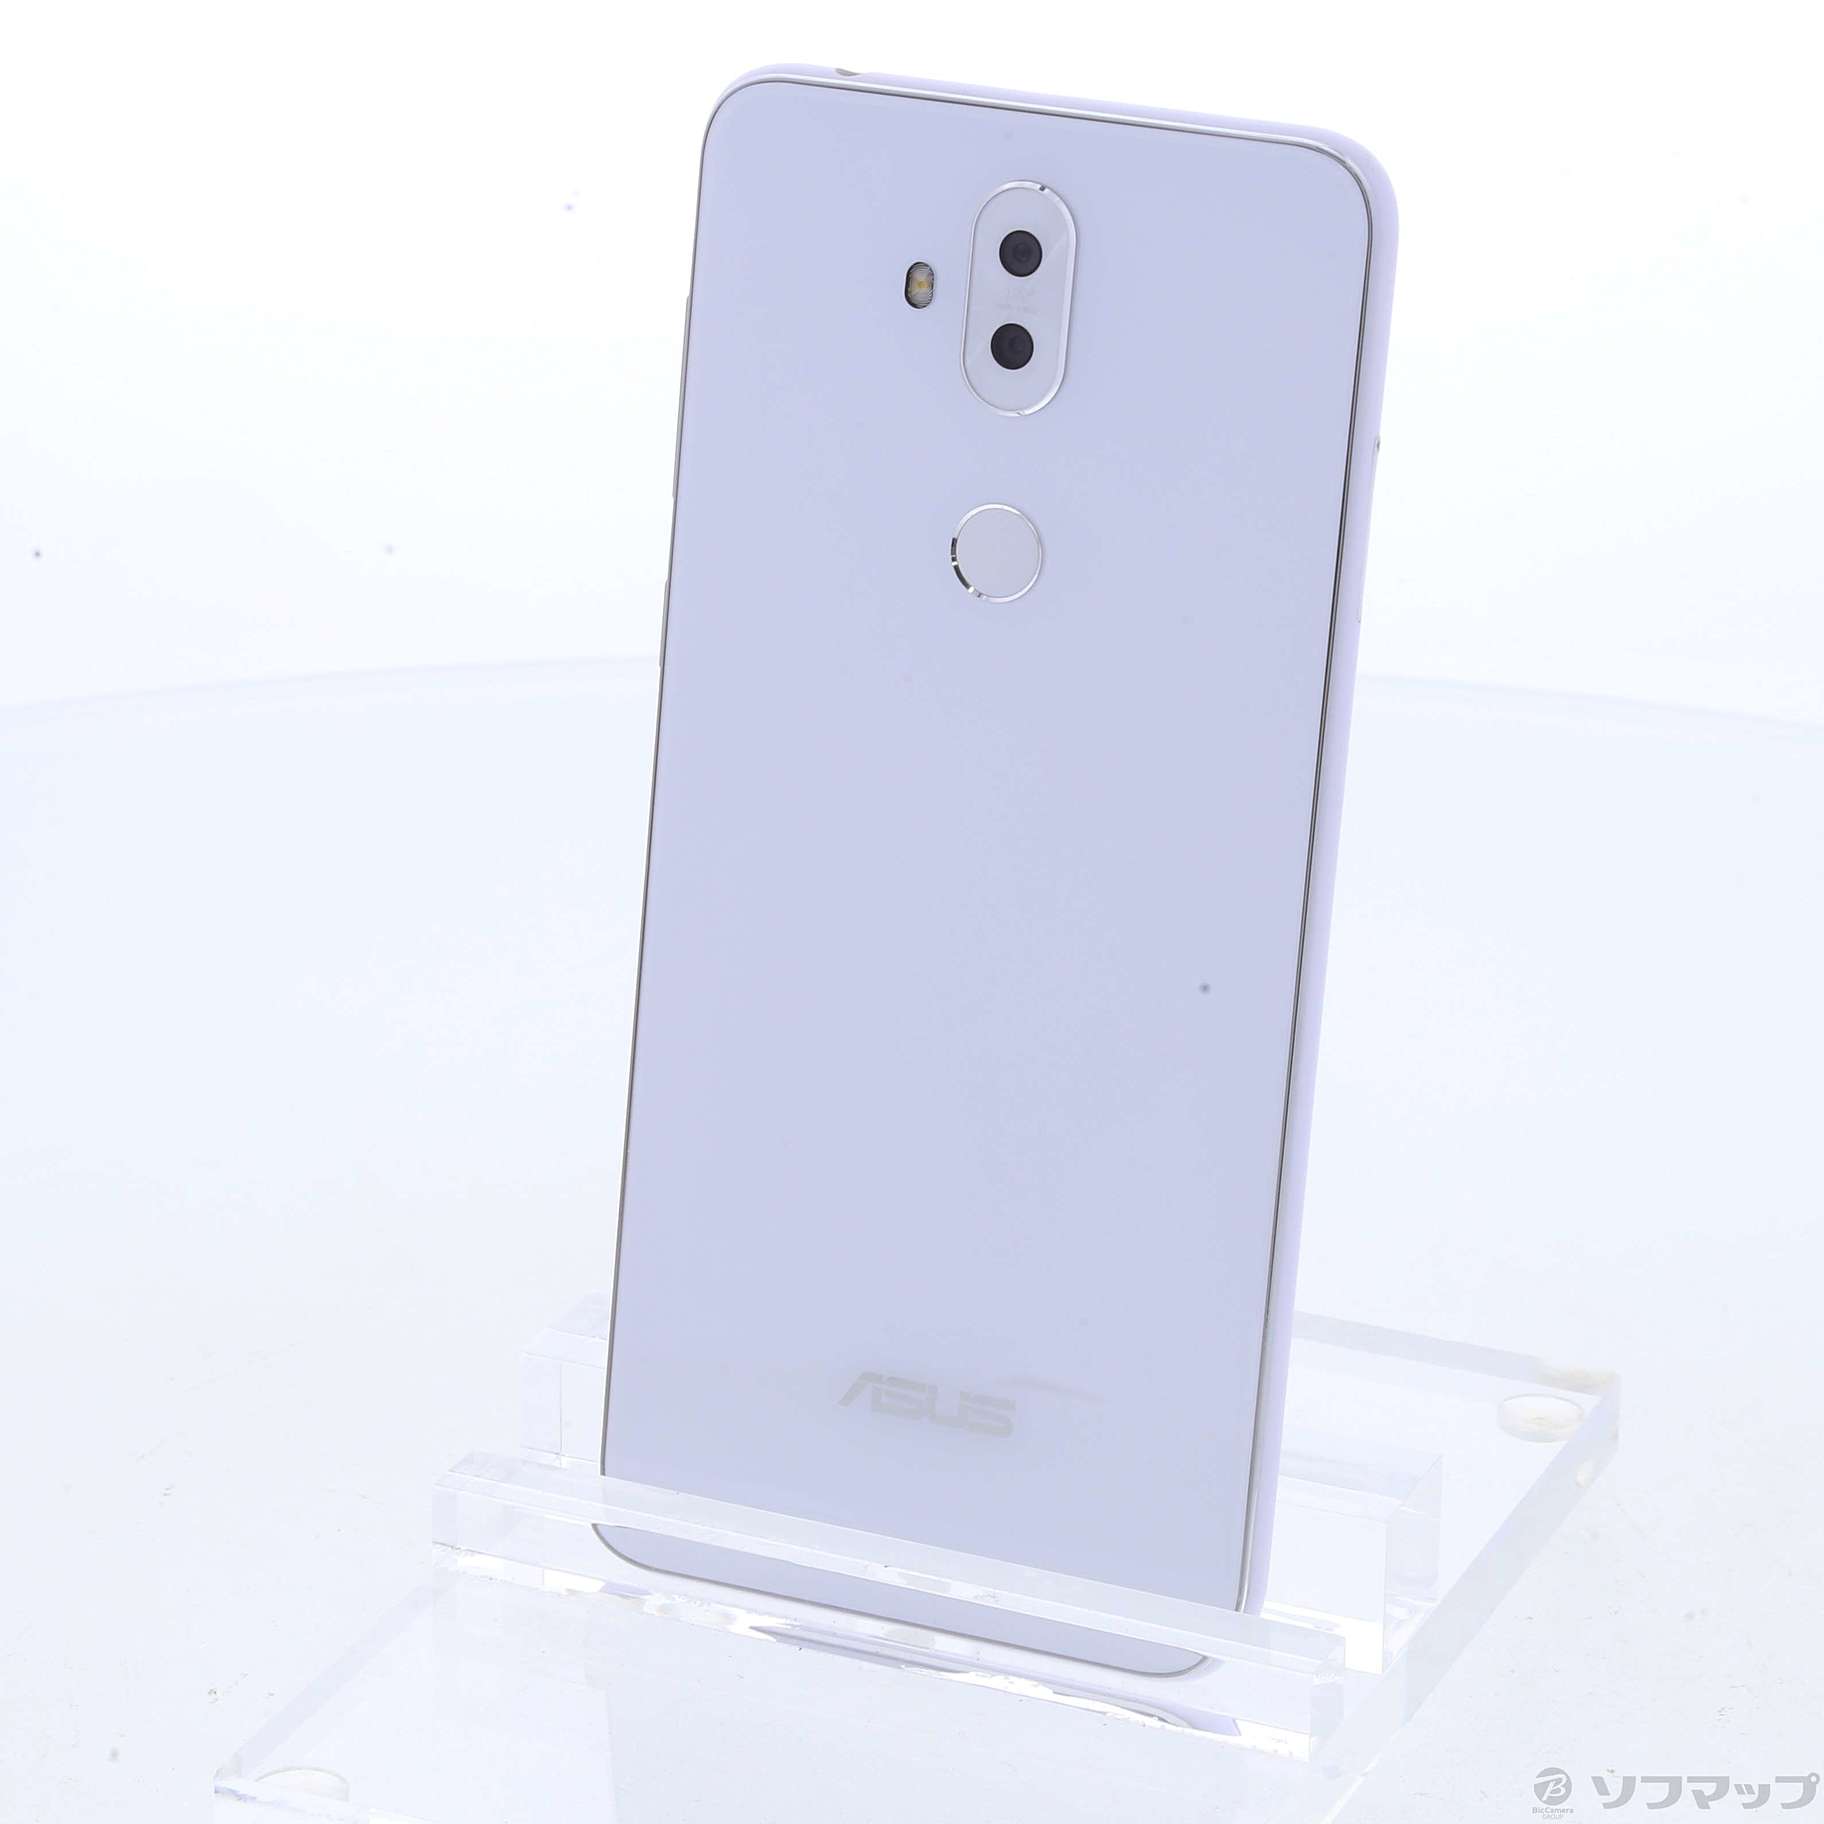 中古】ZenFone 5Q 64GB ムーンライトホワイト ZC600KL-WH64S4 SIM ...